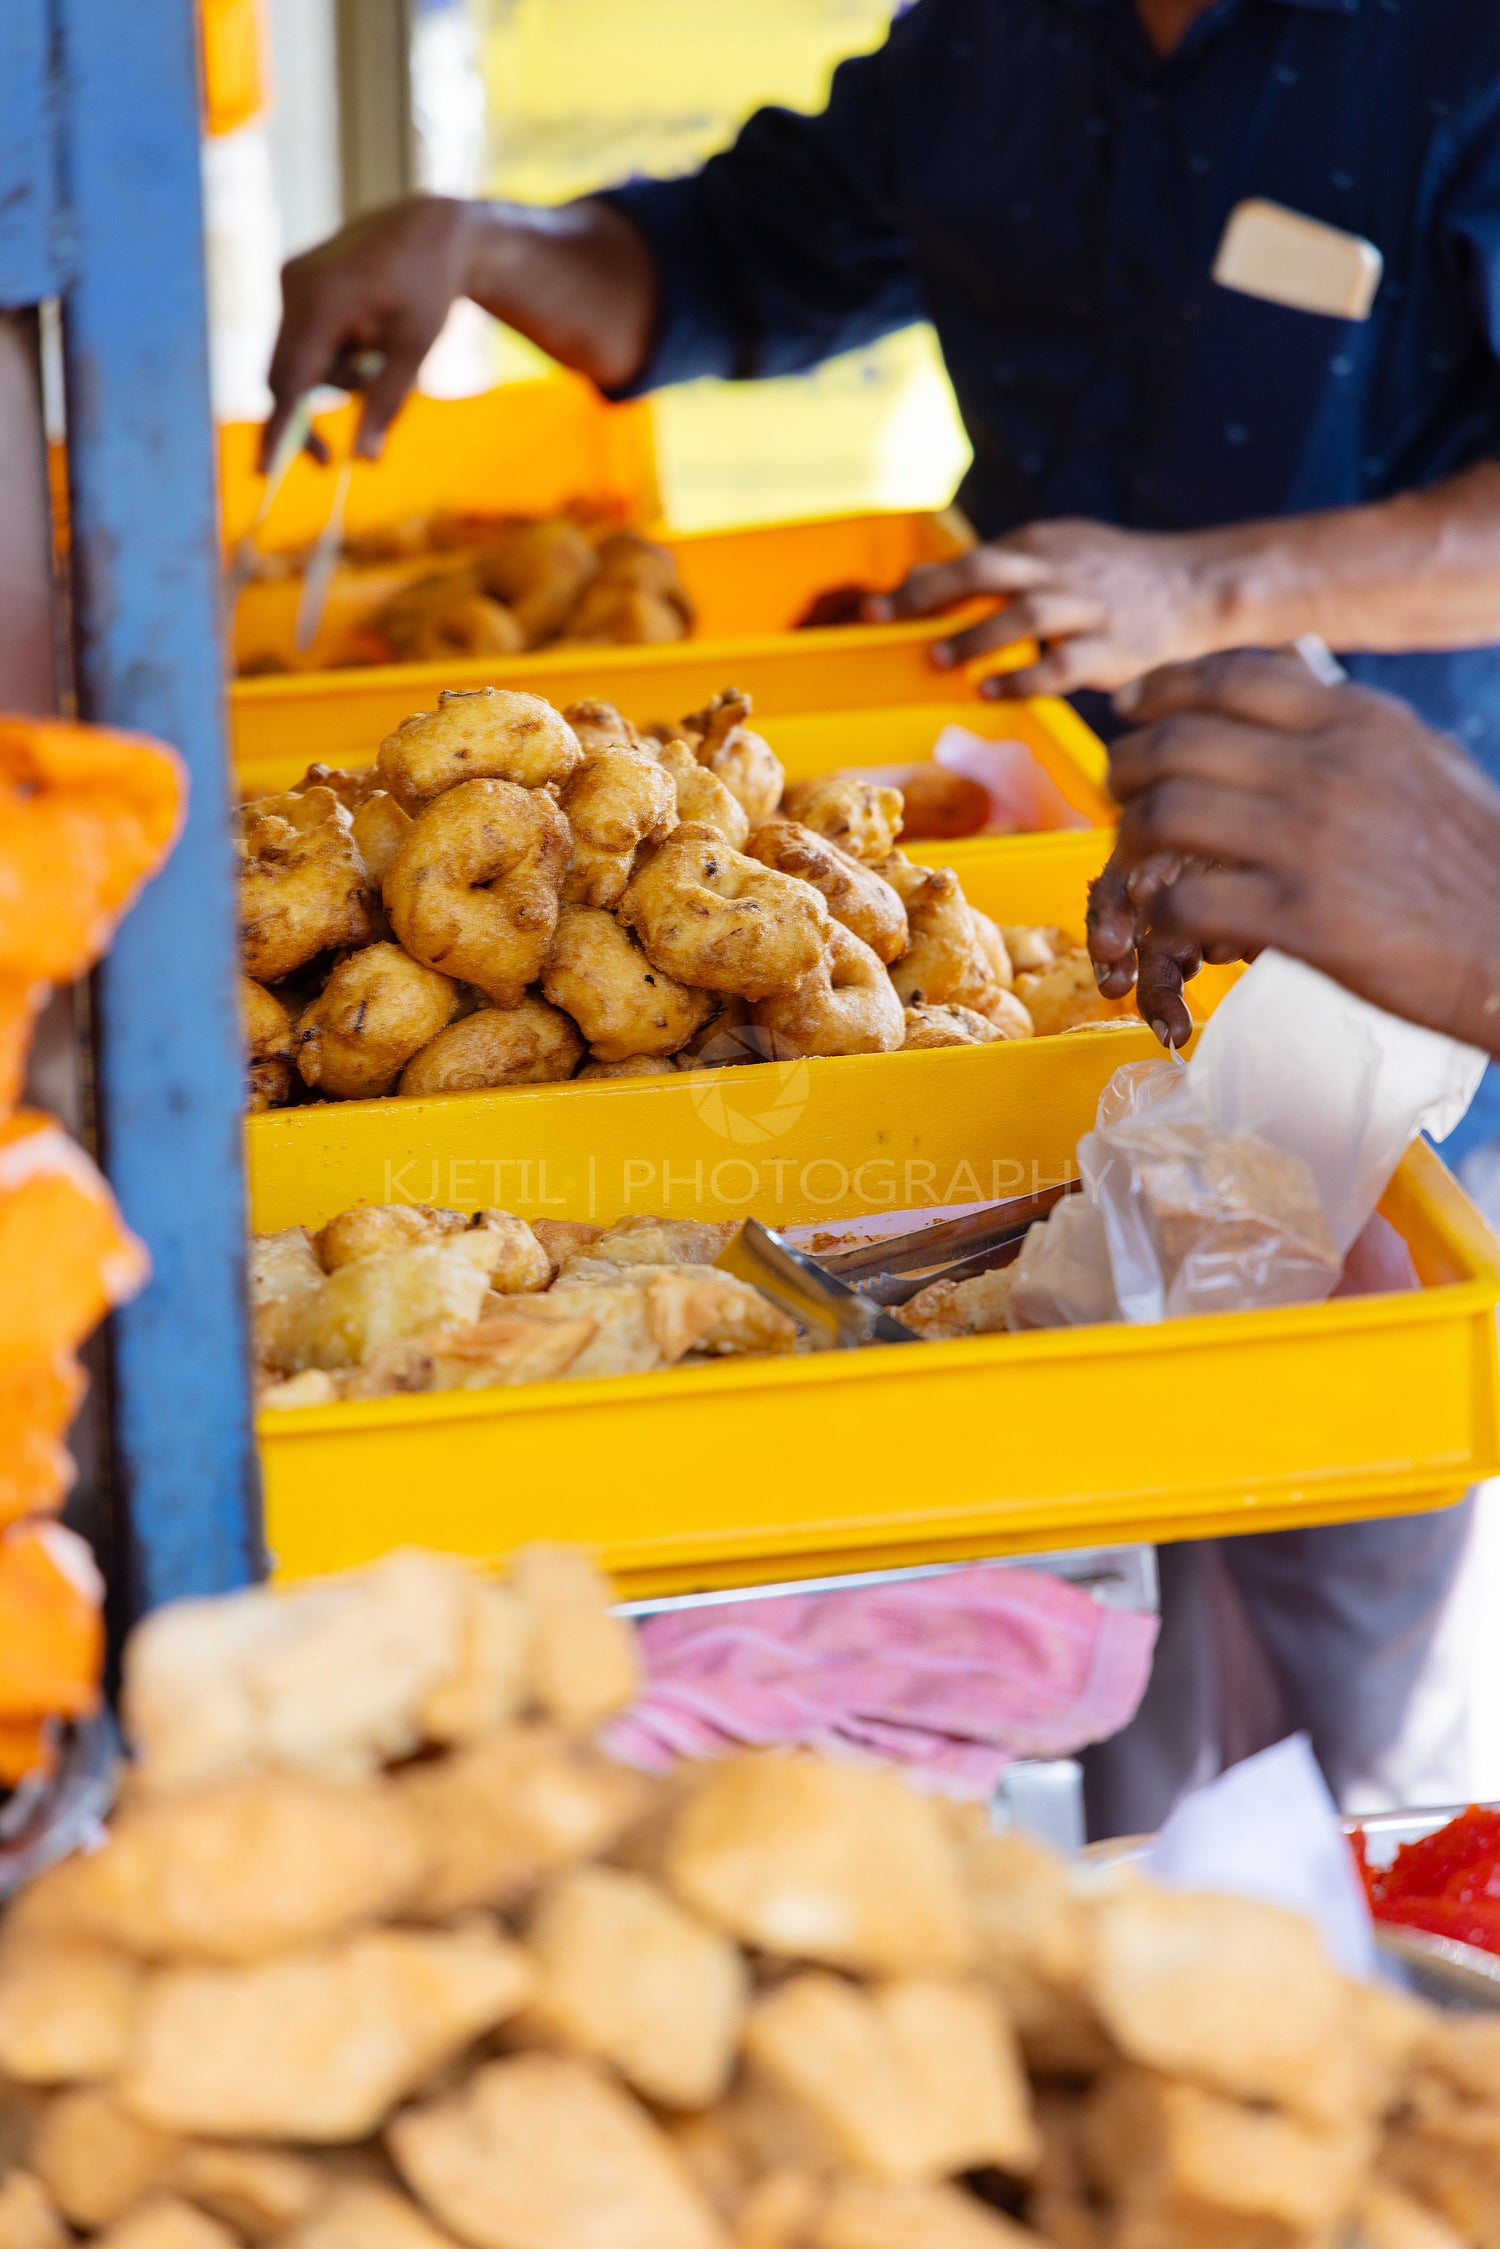 Street food vendor selling fried snacks in Asia